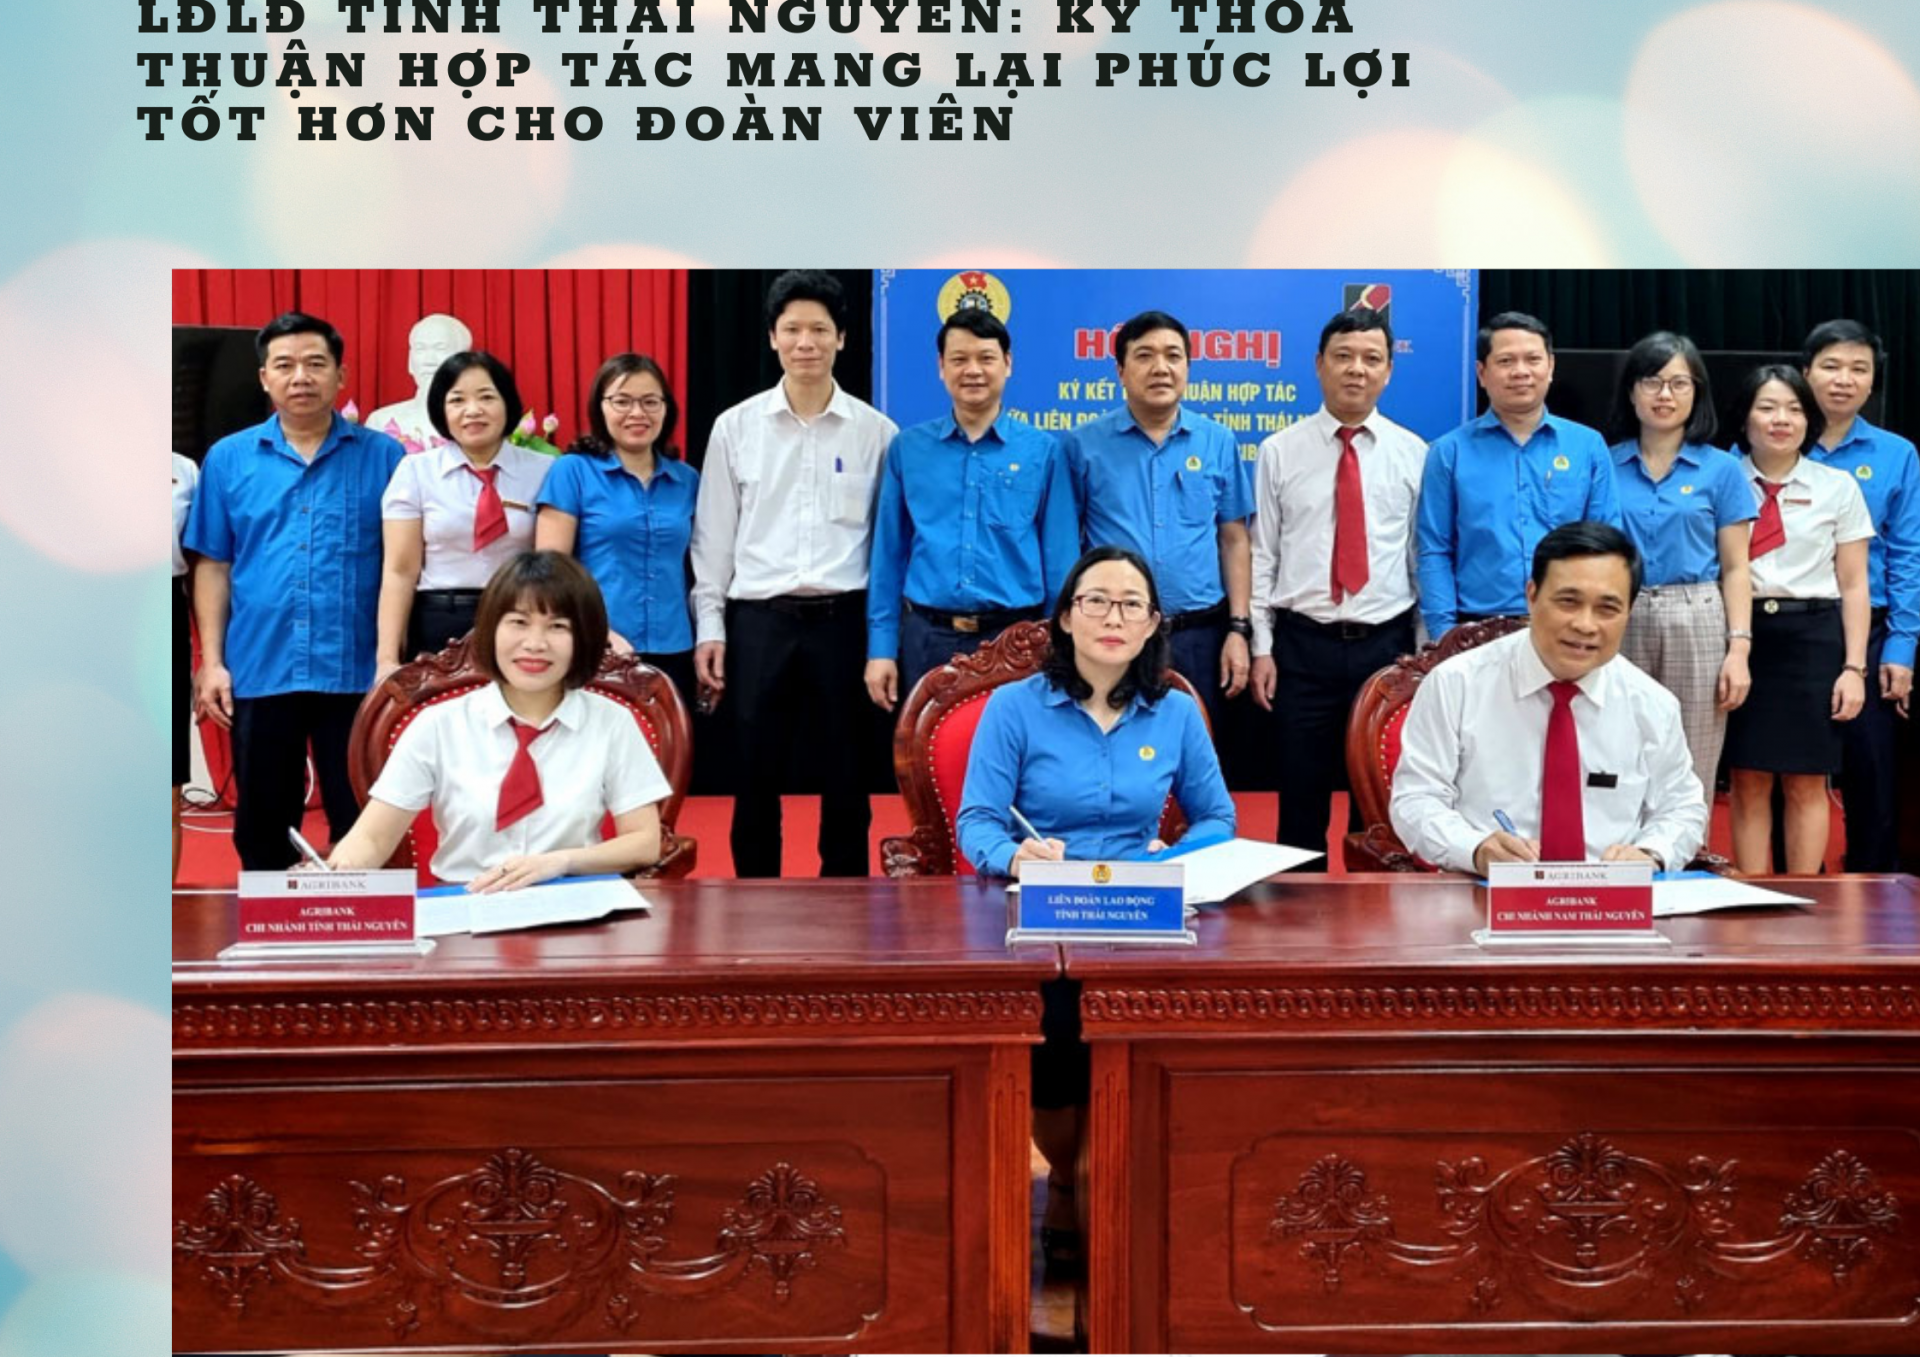 LĐLĐ tỉnh Thái Nguyên: Ký thỏa thuận hợp tác mang lại phúc lợi tốt hơn cho đoàn viên